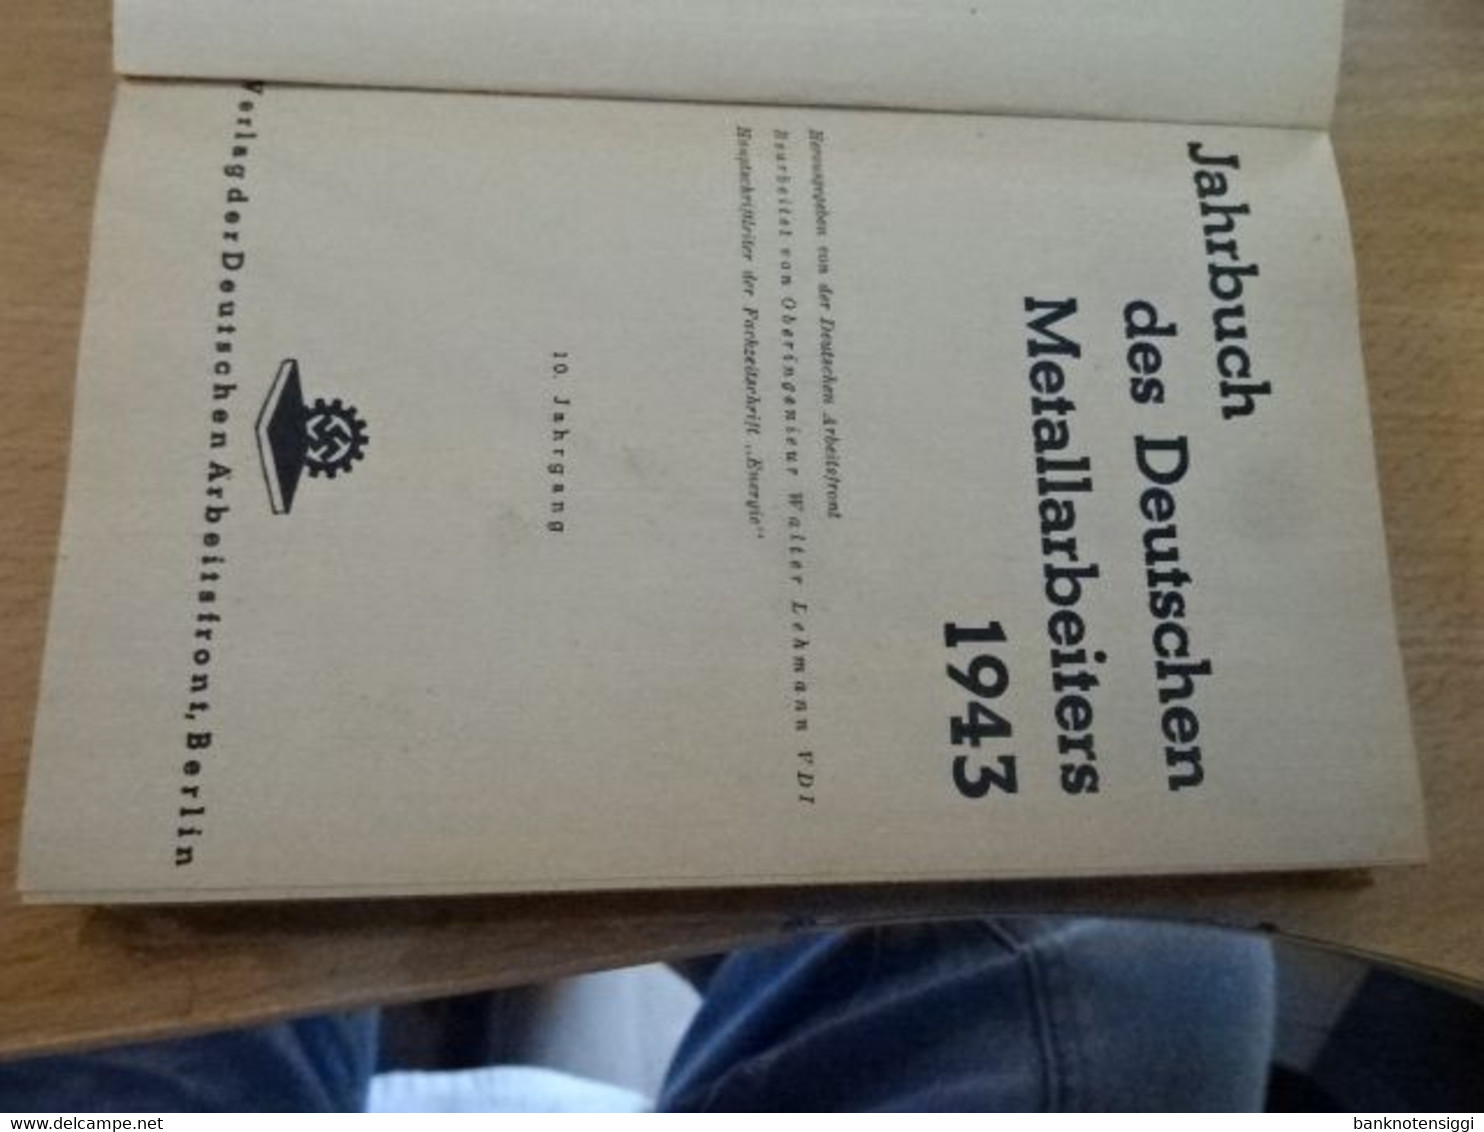 Jahrbuch Des Deutschen Metallarbeiters. 1943 - Technique